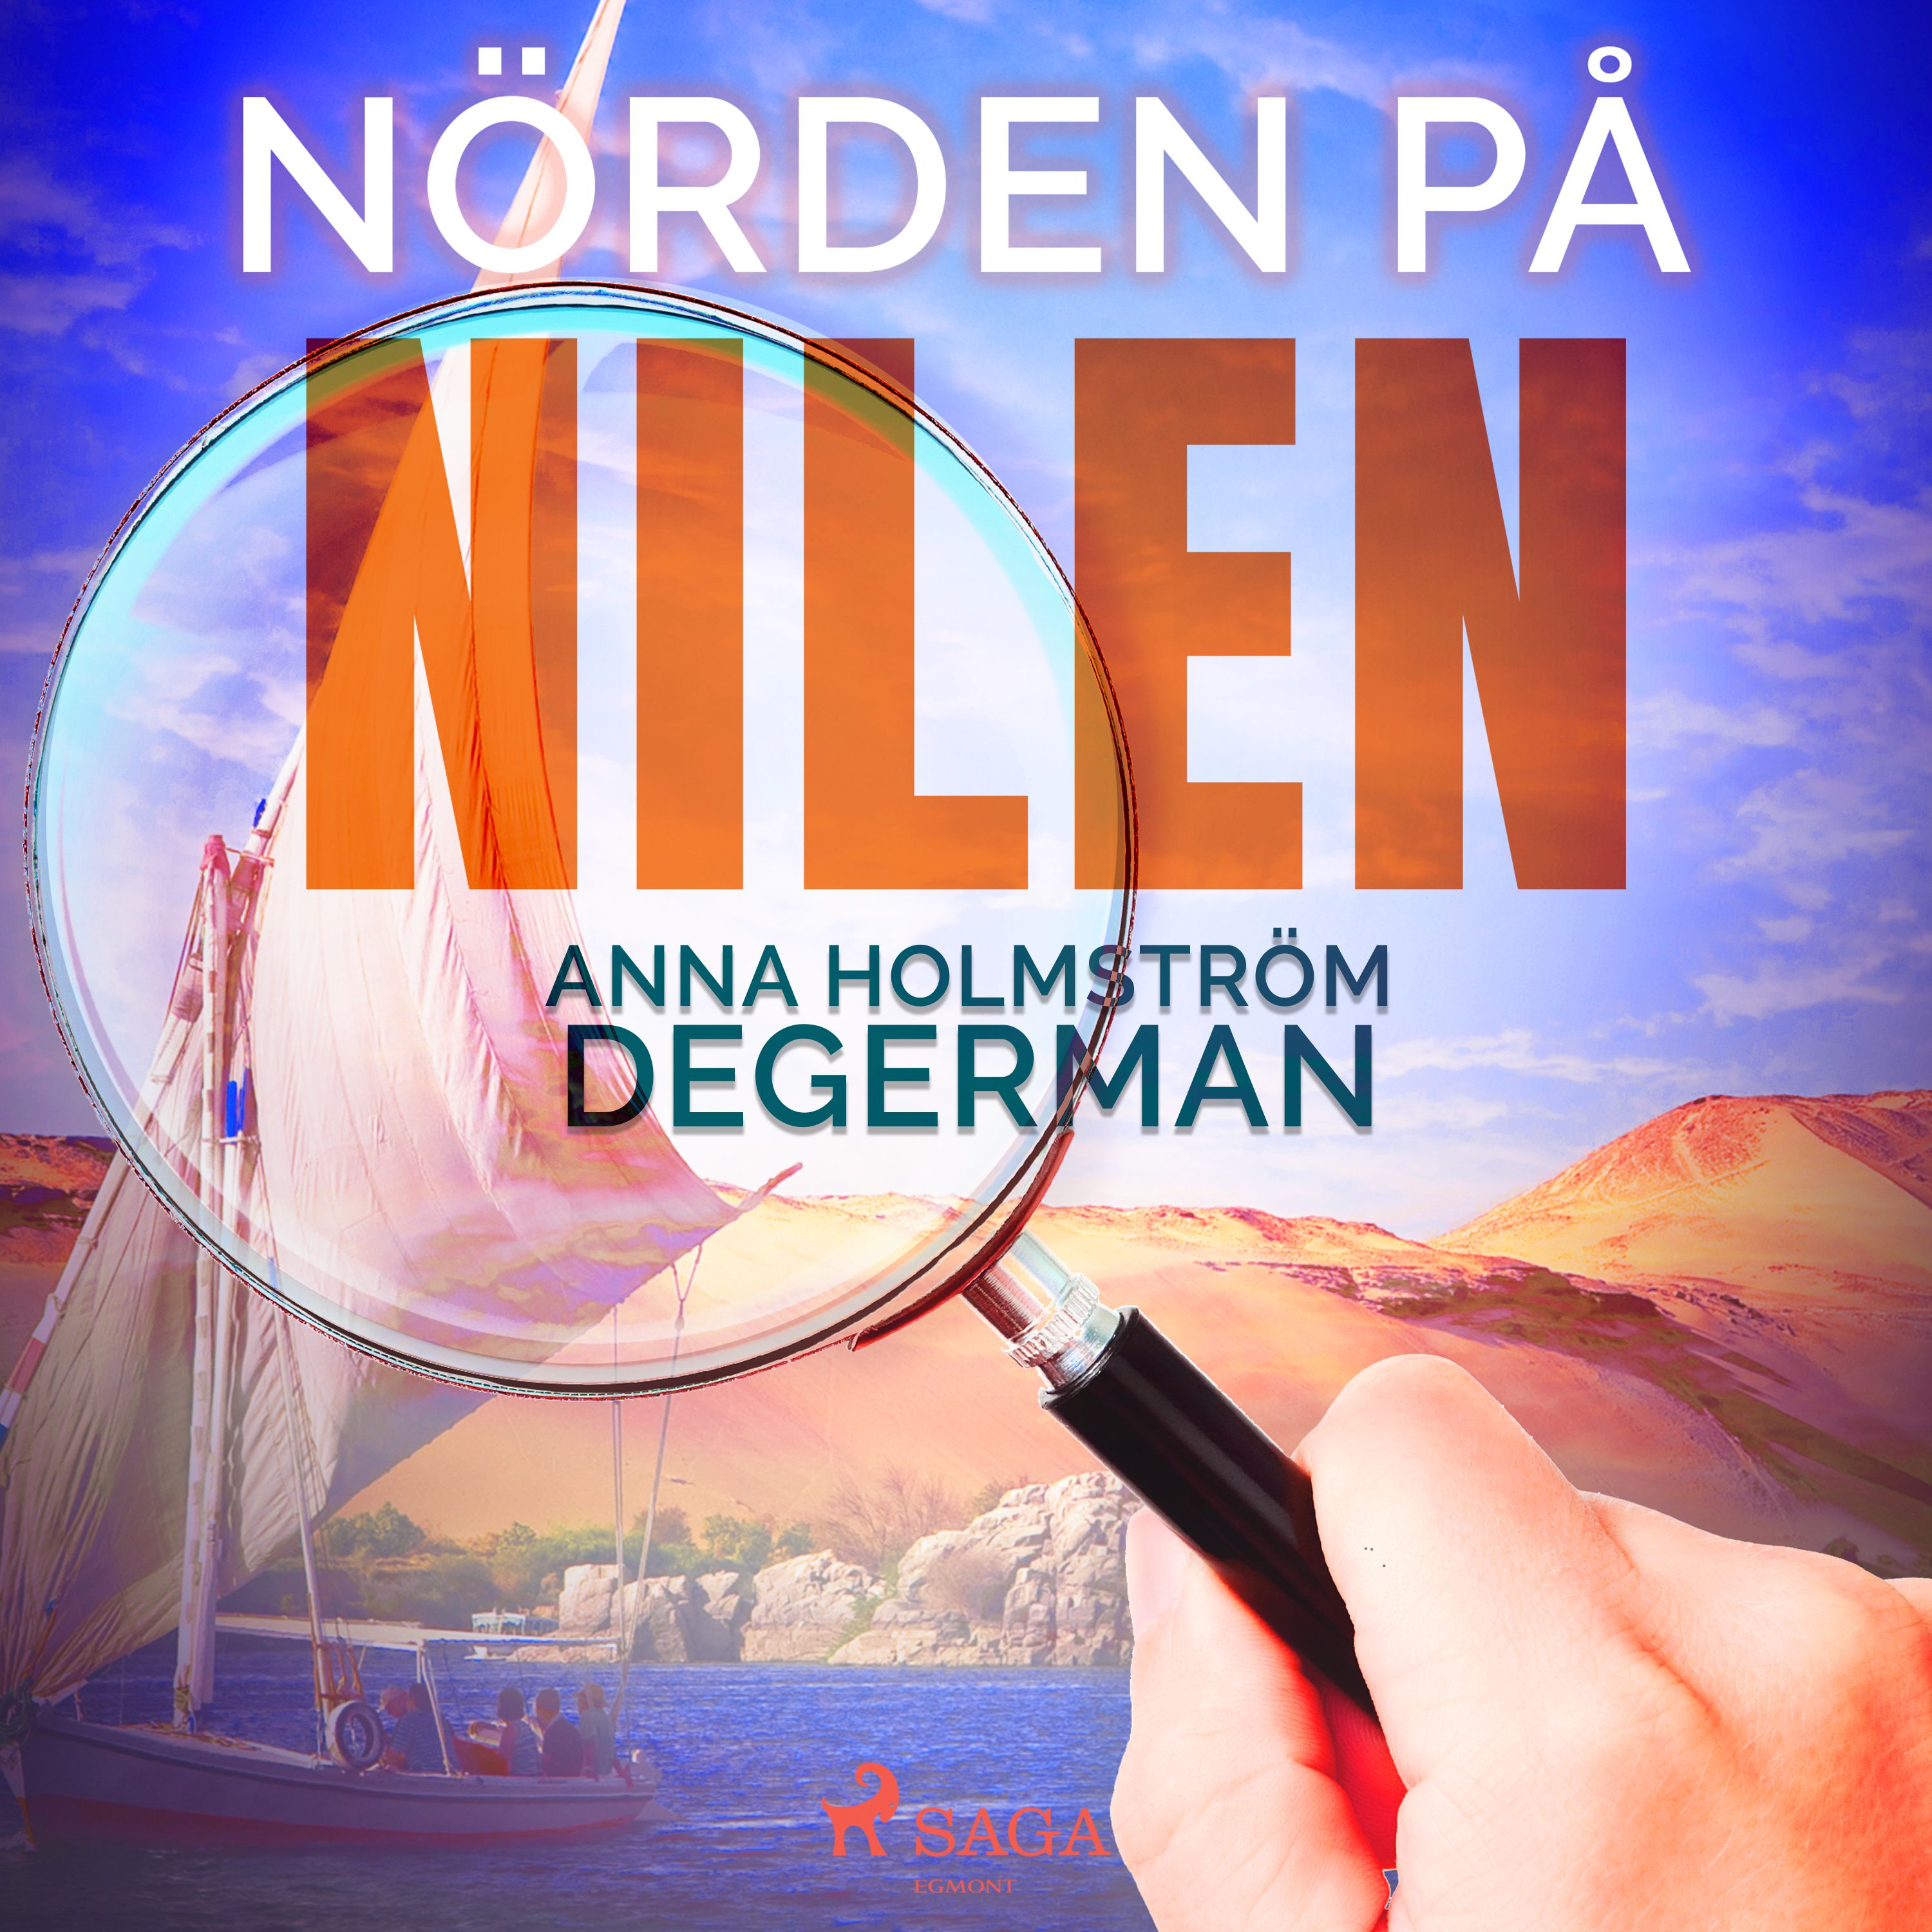 Nörden på nilen, ljudbok av Anna Holmström Degerman